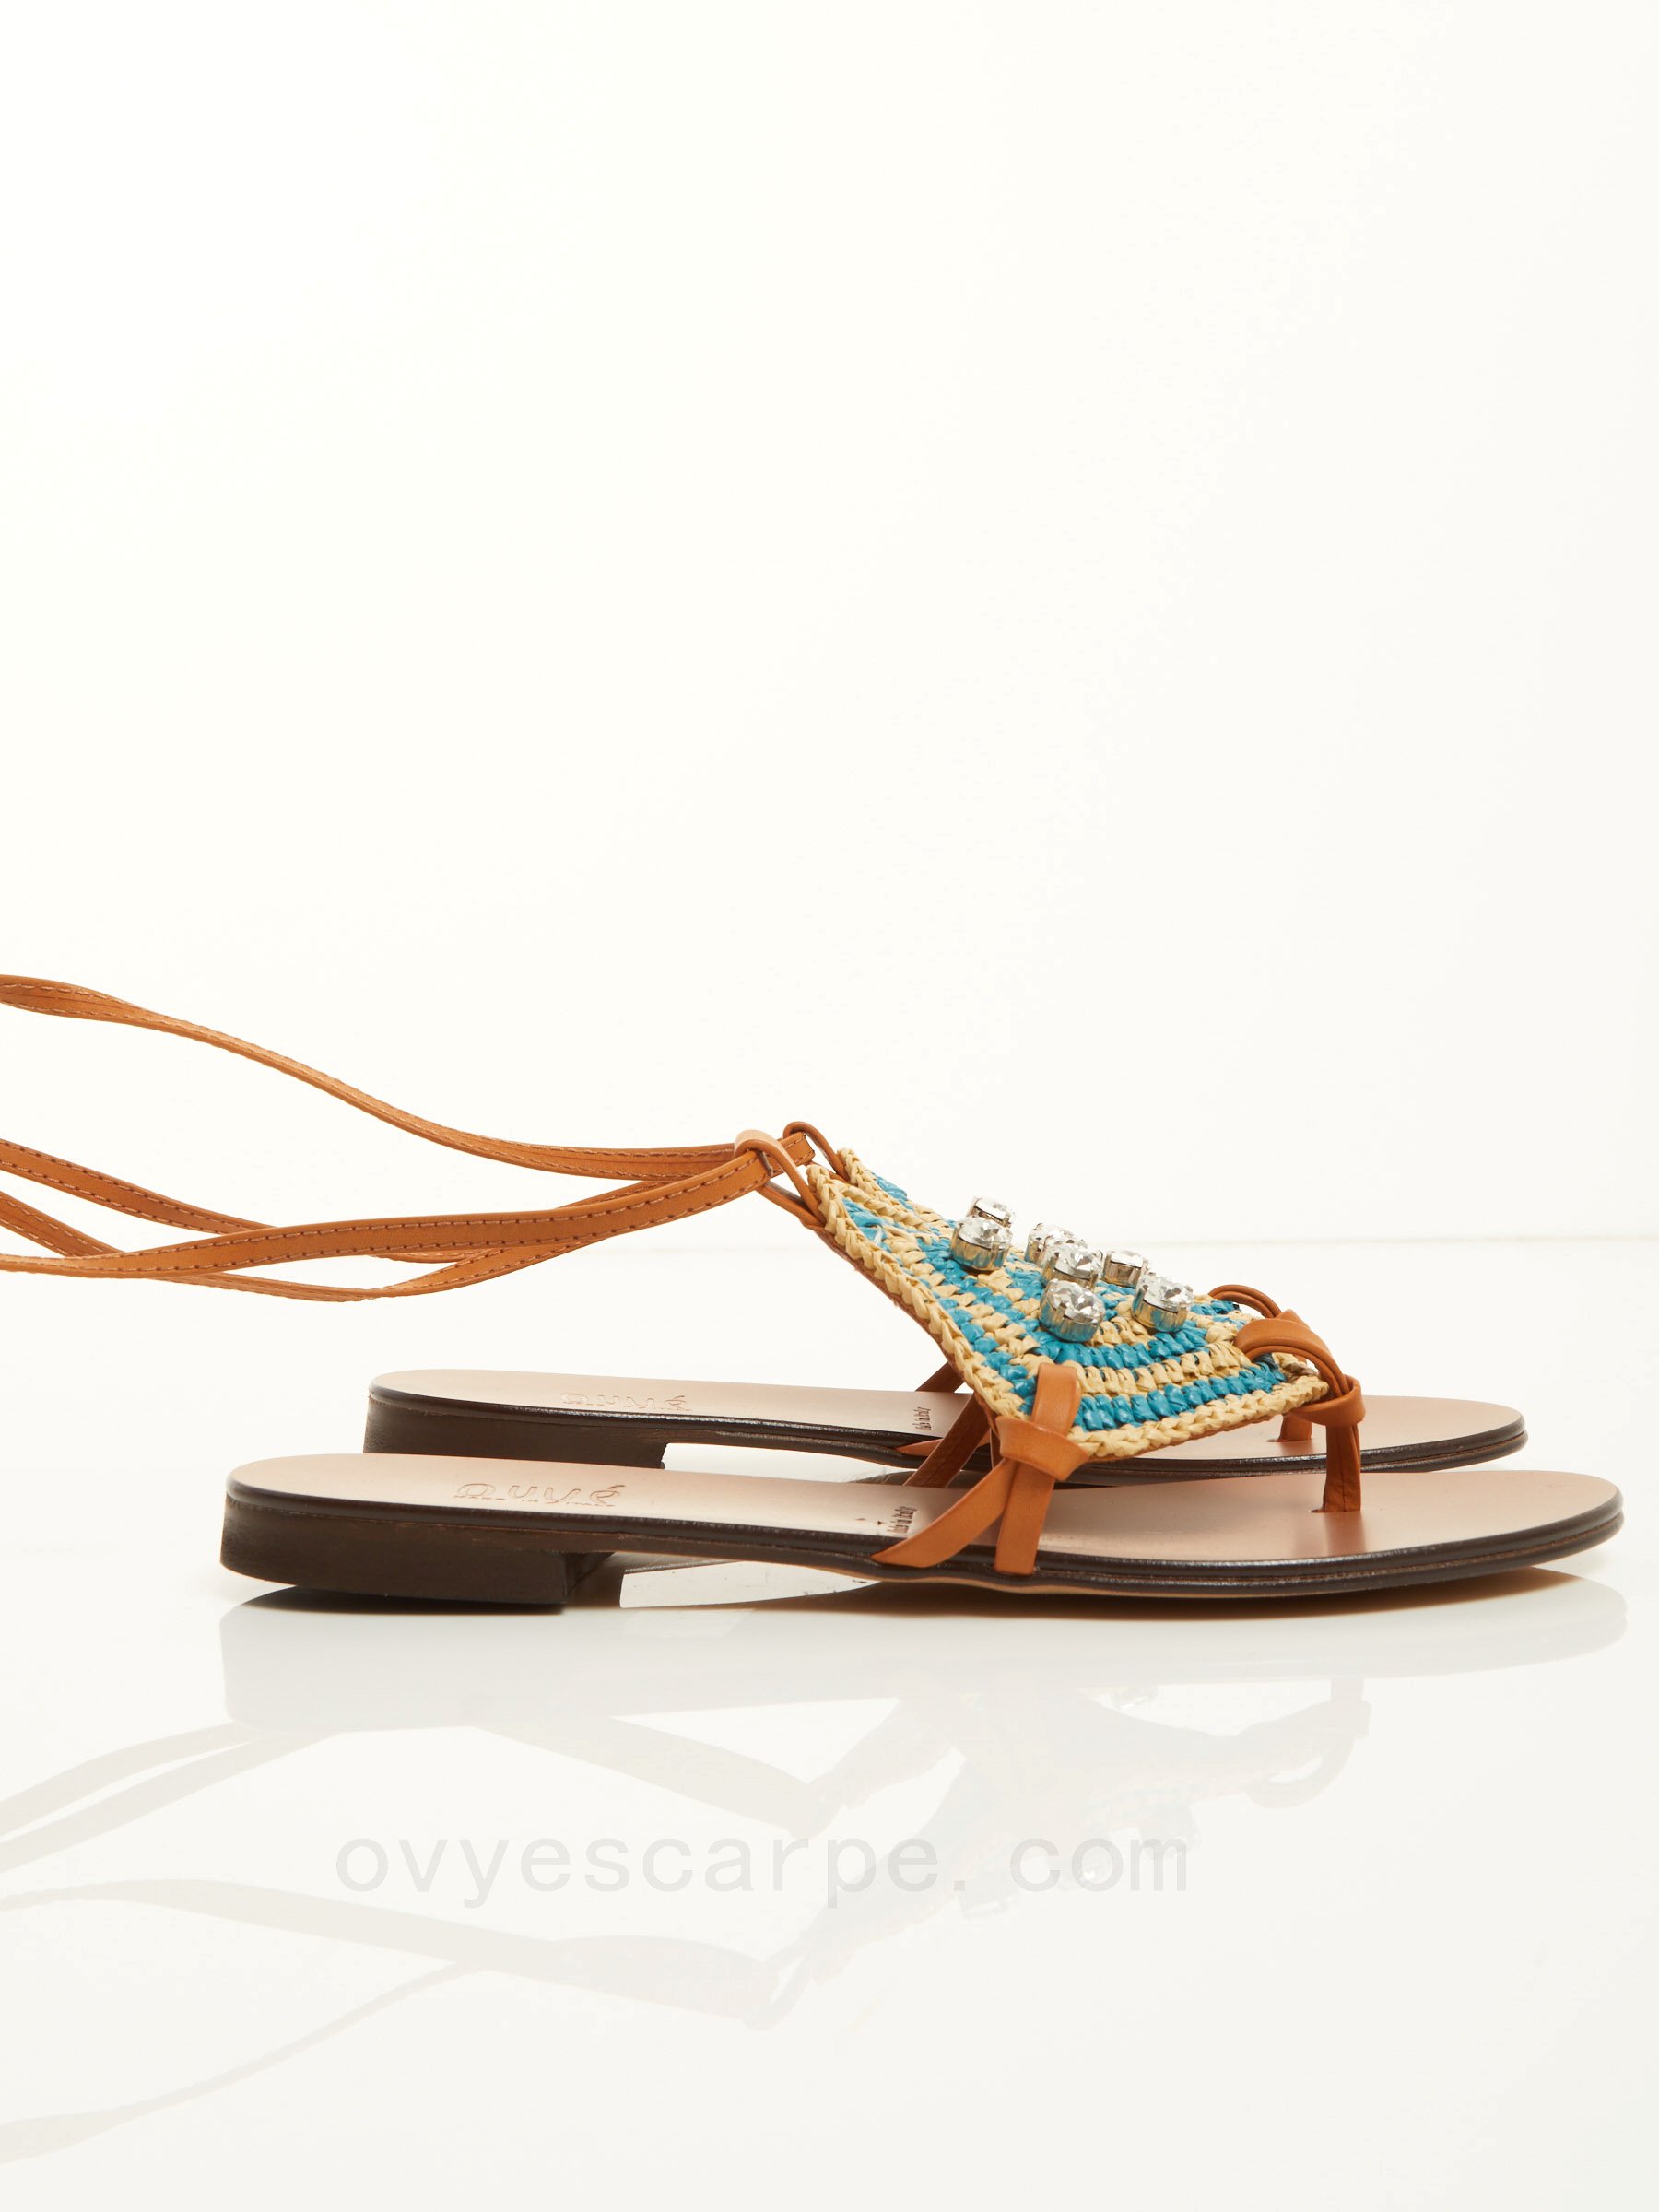 85% Codice Sconto Greek Raffia Sandal F08161027-0516 scarpe ovy&#232; saldi